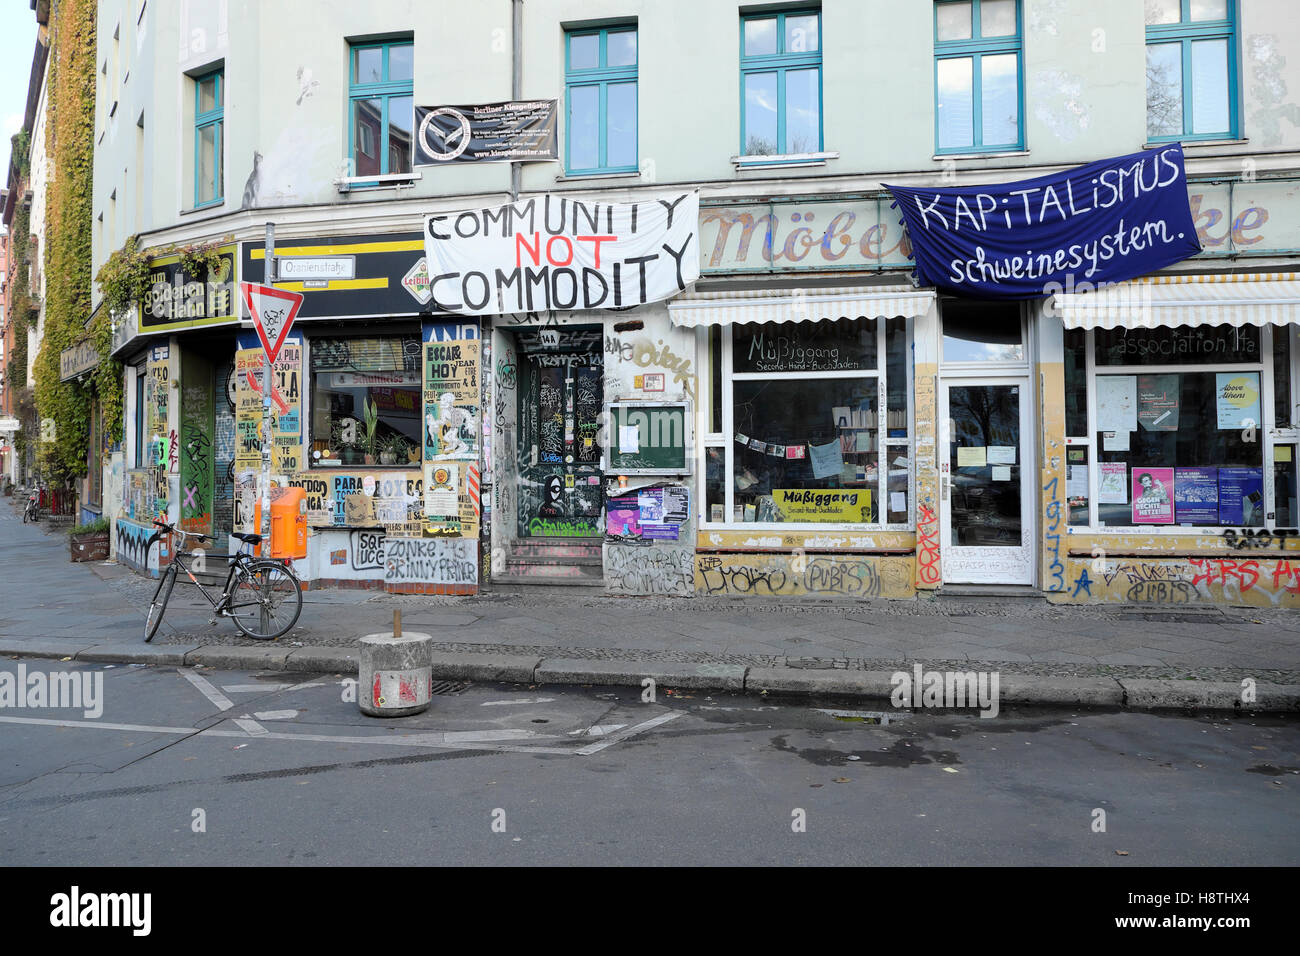 Politique de lutte contre le capitalisme en dehors des bannières boutiques sur Oranienstraße dans Kreuzberg, Berlin, Allemagne KATHY DEWITT Banque D'Images